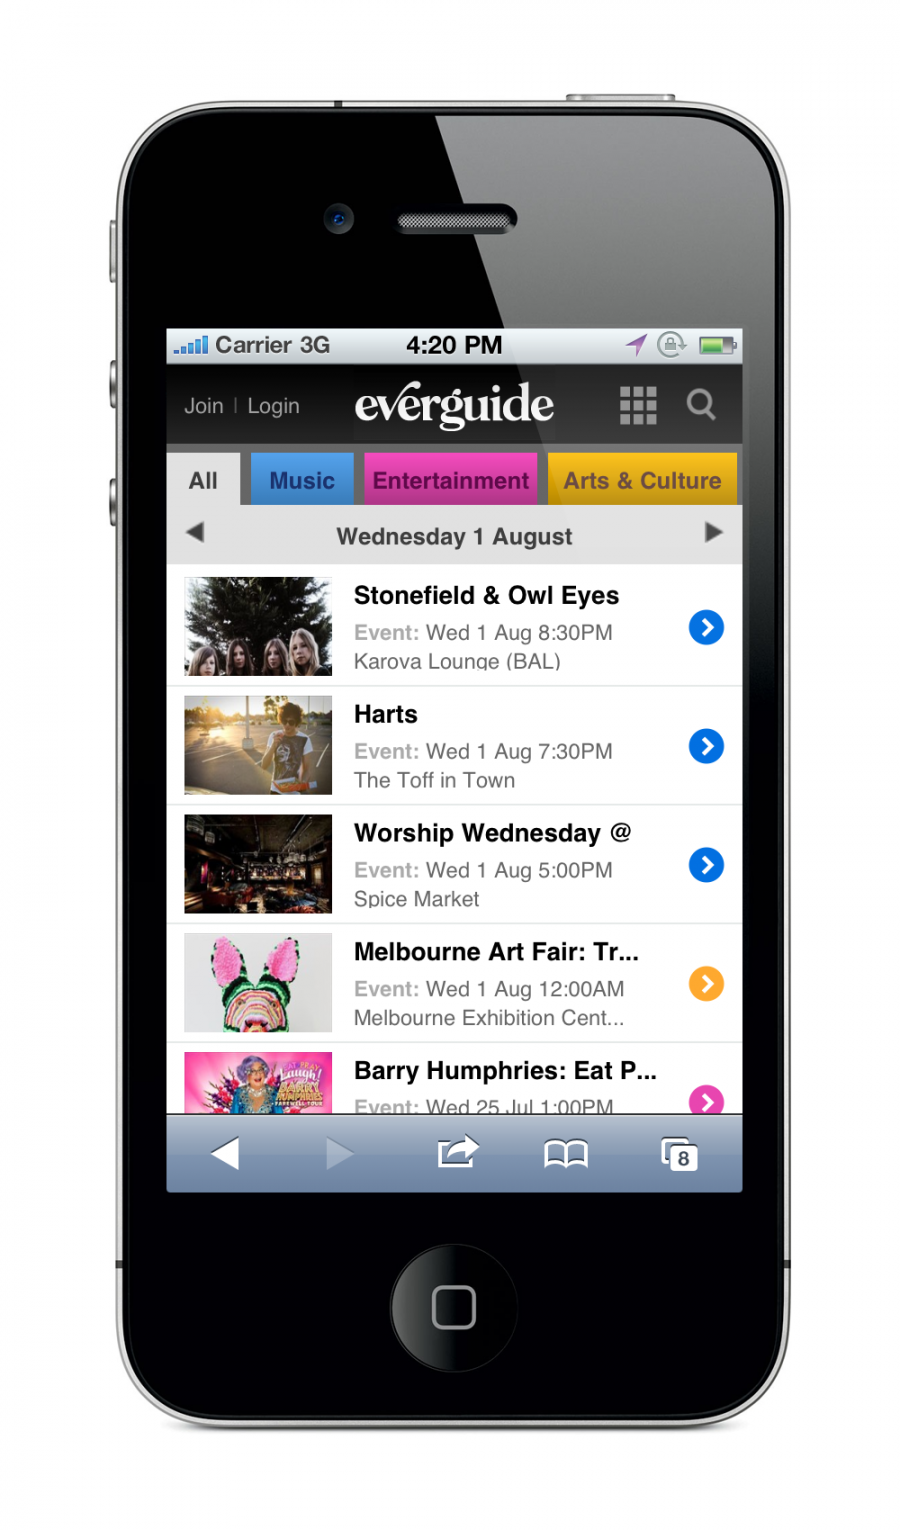 Everguide Mobile Site - Event List